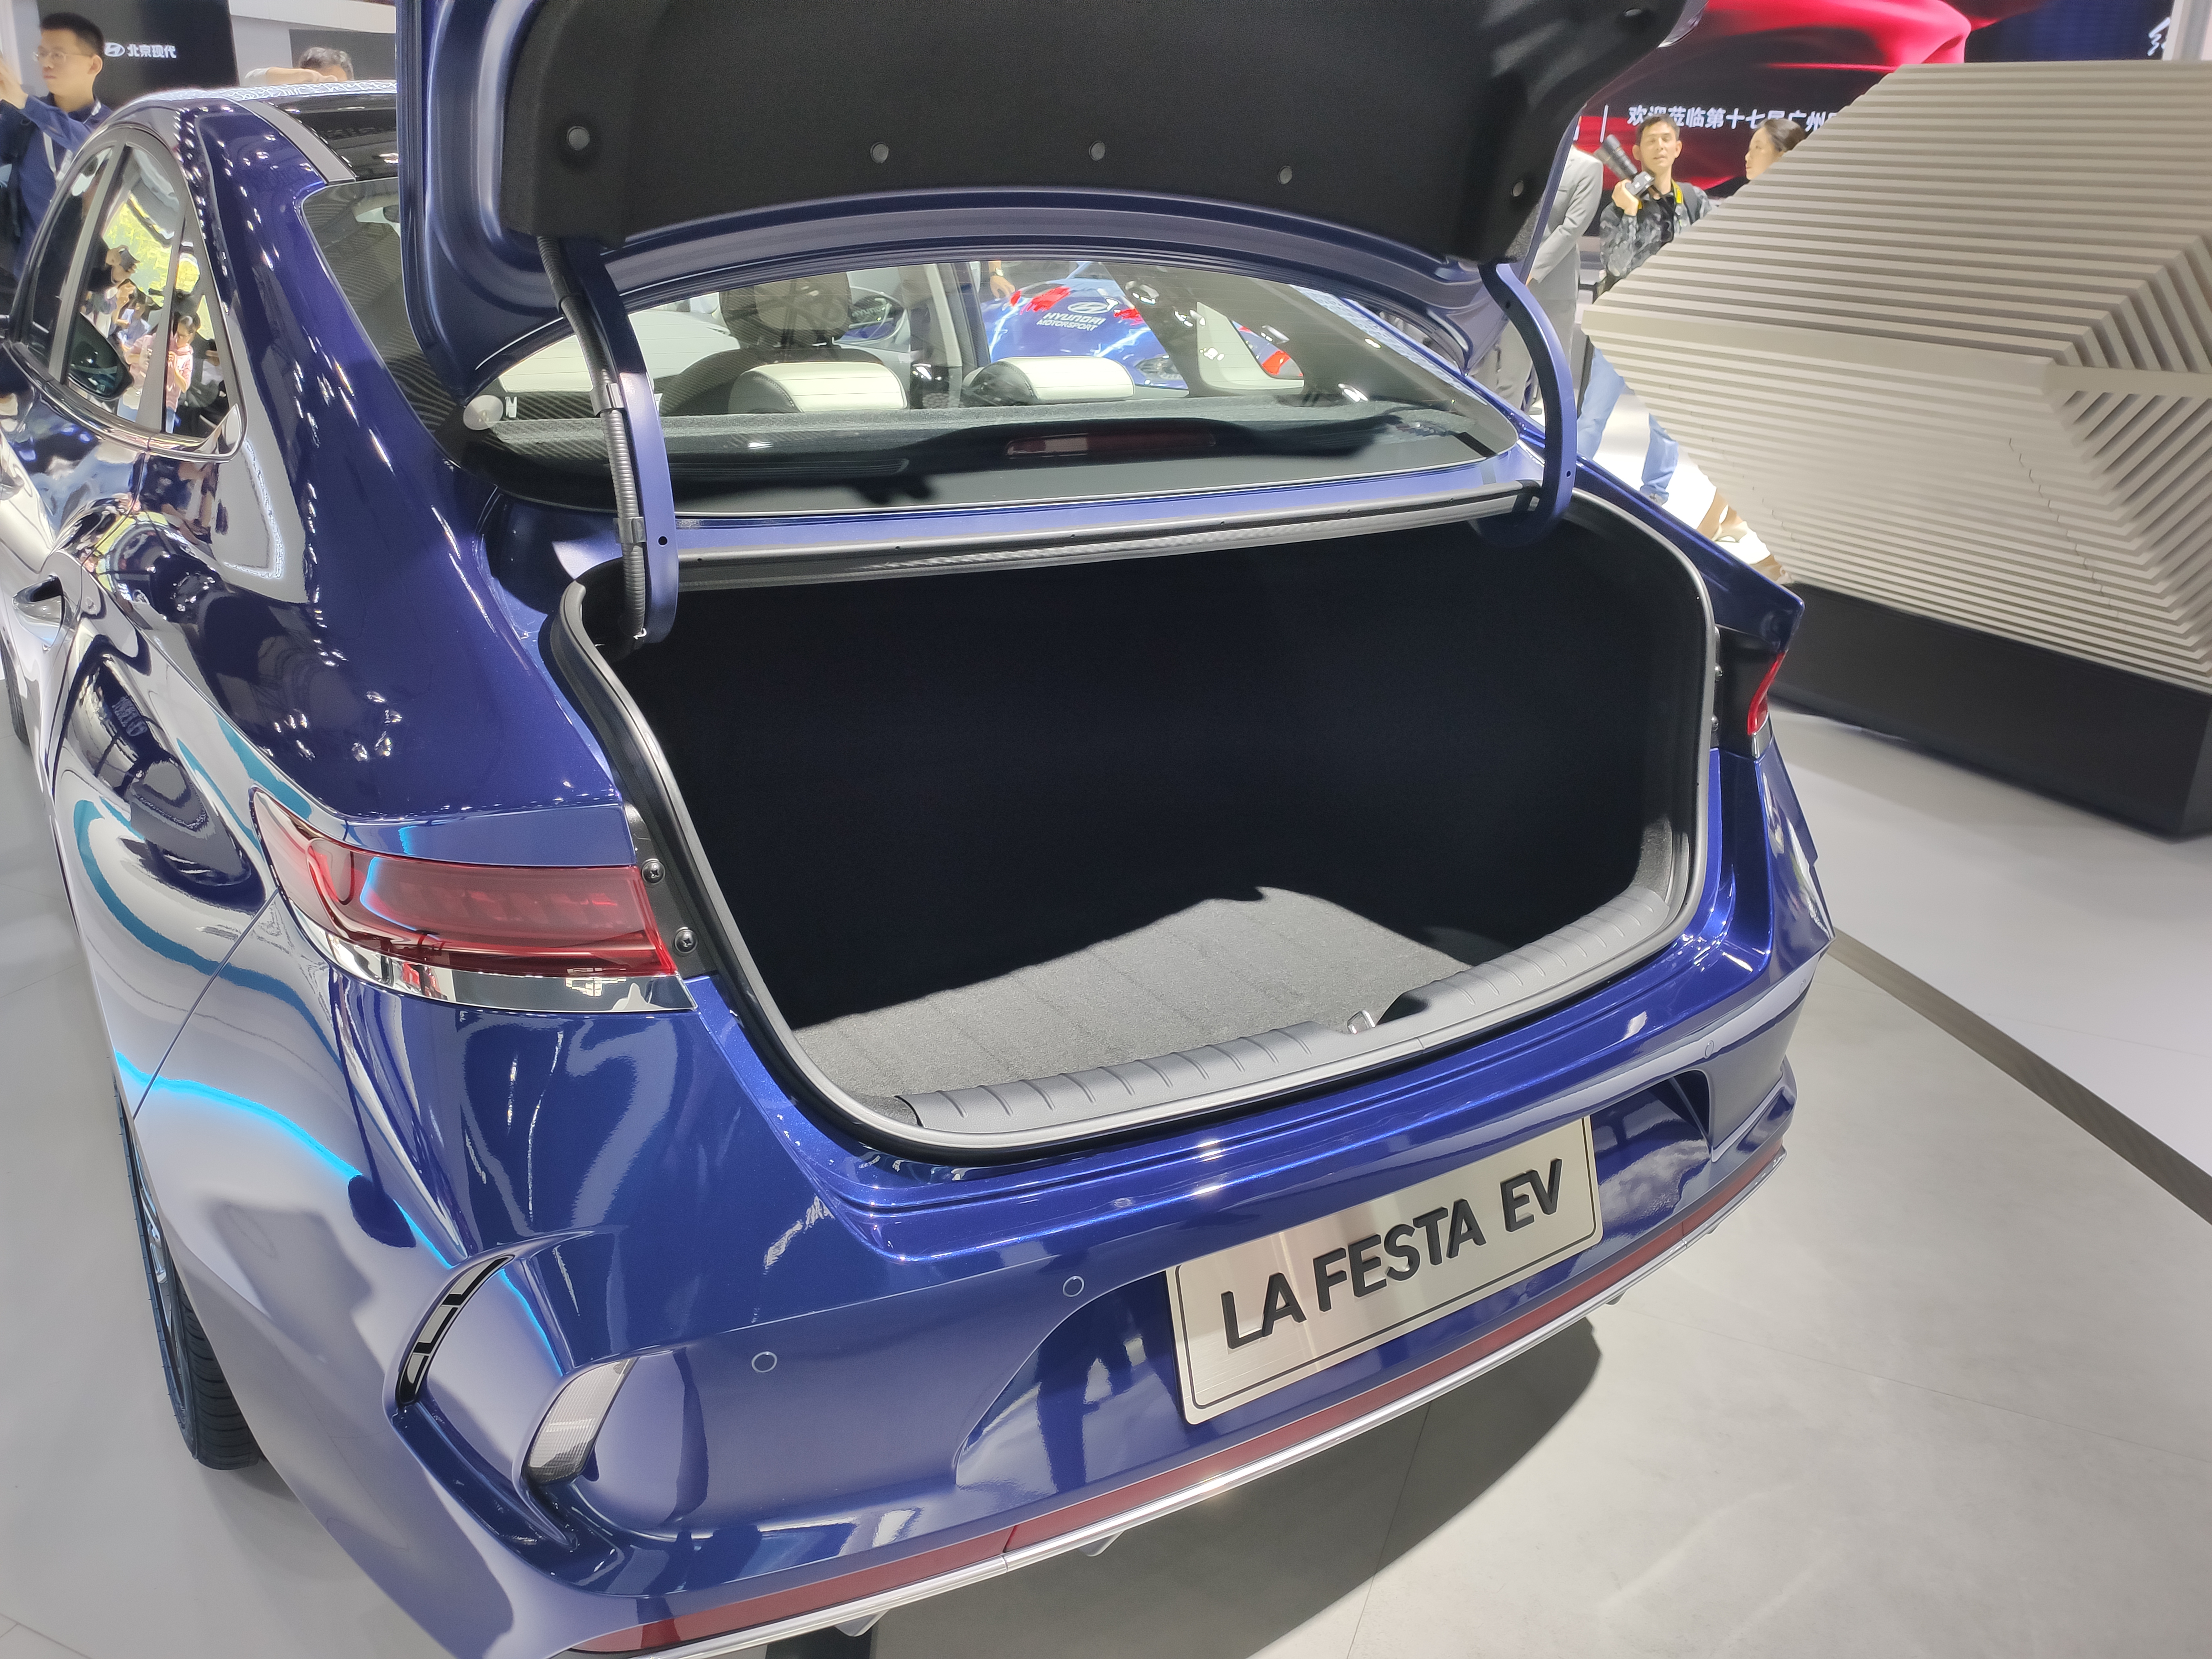 现代菲斯塔纯电动版车型将于明年第一季度上市